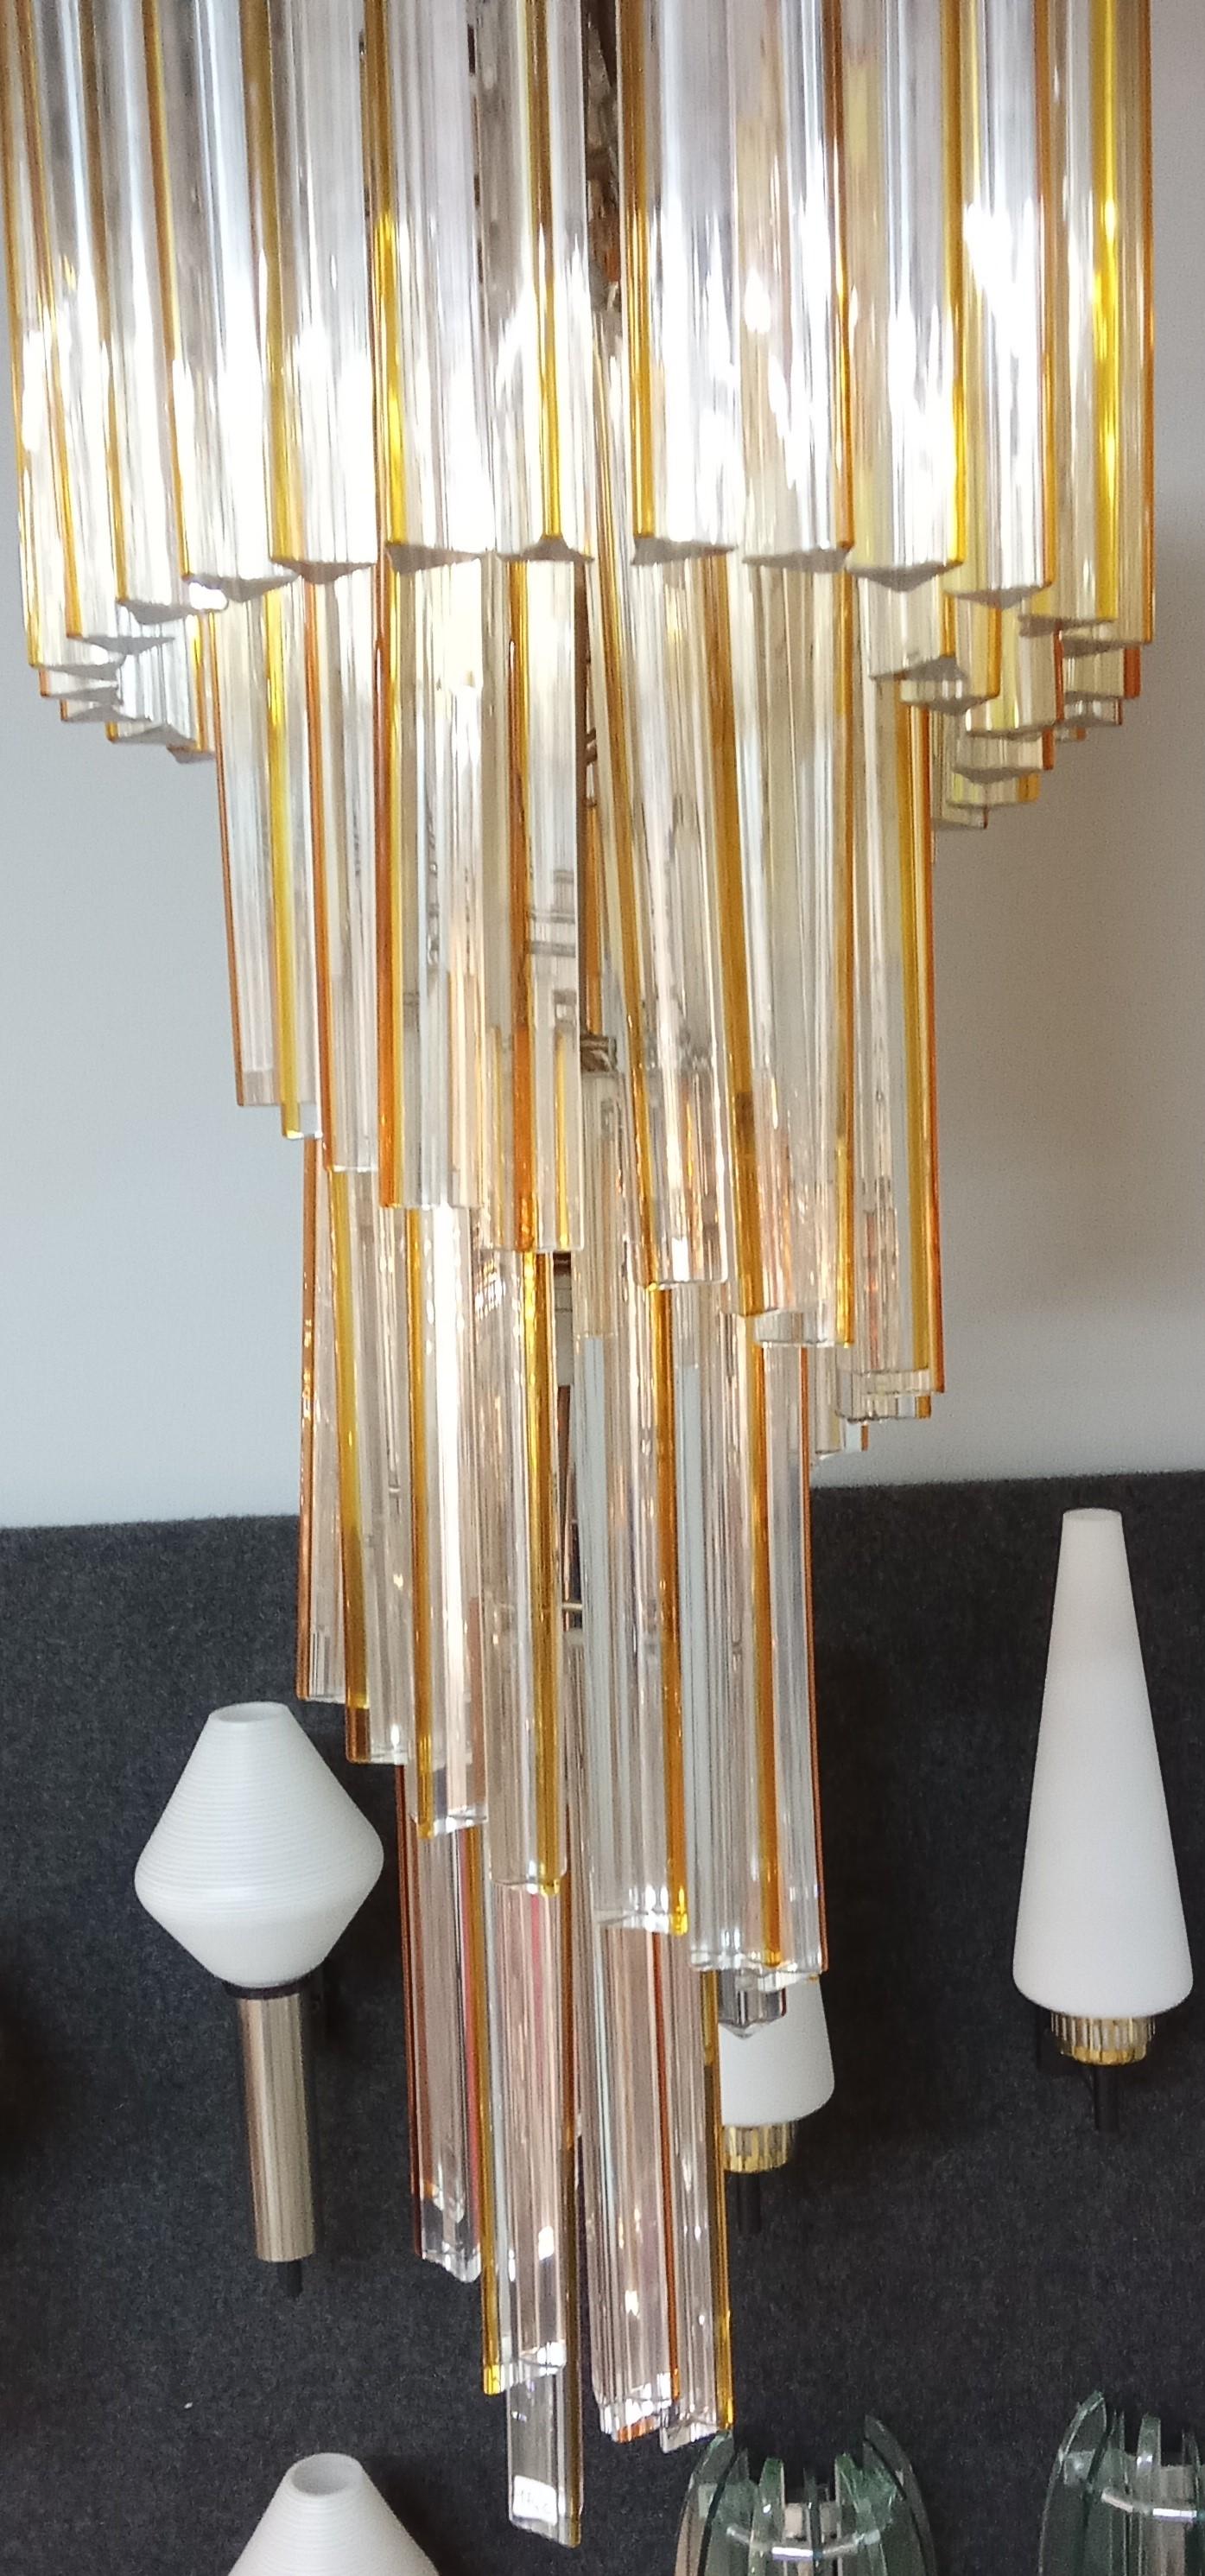 Grande lampadario in vetro soffiato, Venini Trilobi. Produzione anni '60 circa.
Vetri disposti a spirale, trasparenti con striature color ambra
Ottime condizioni.